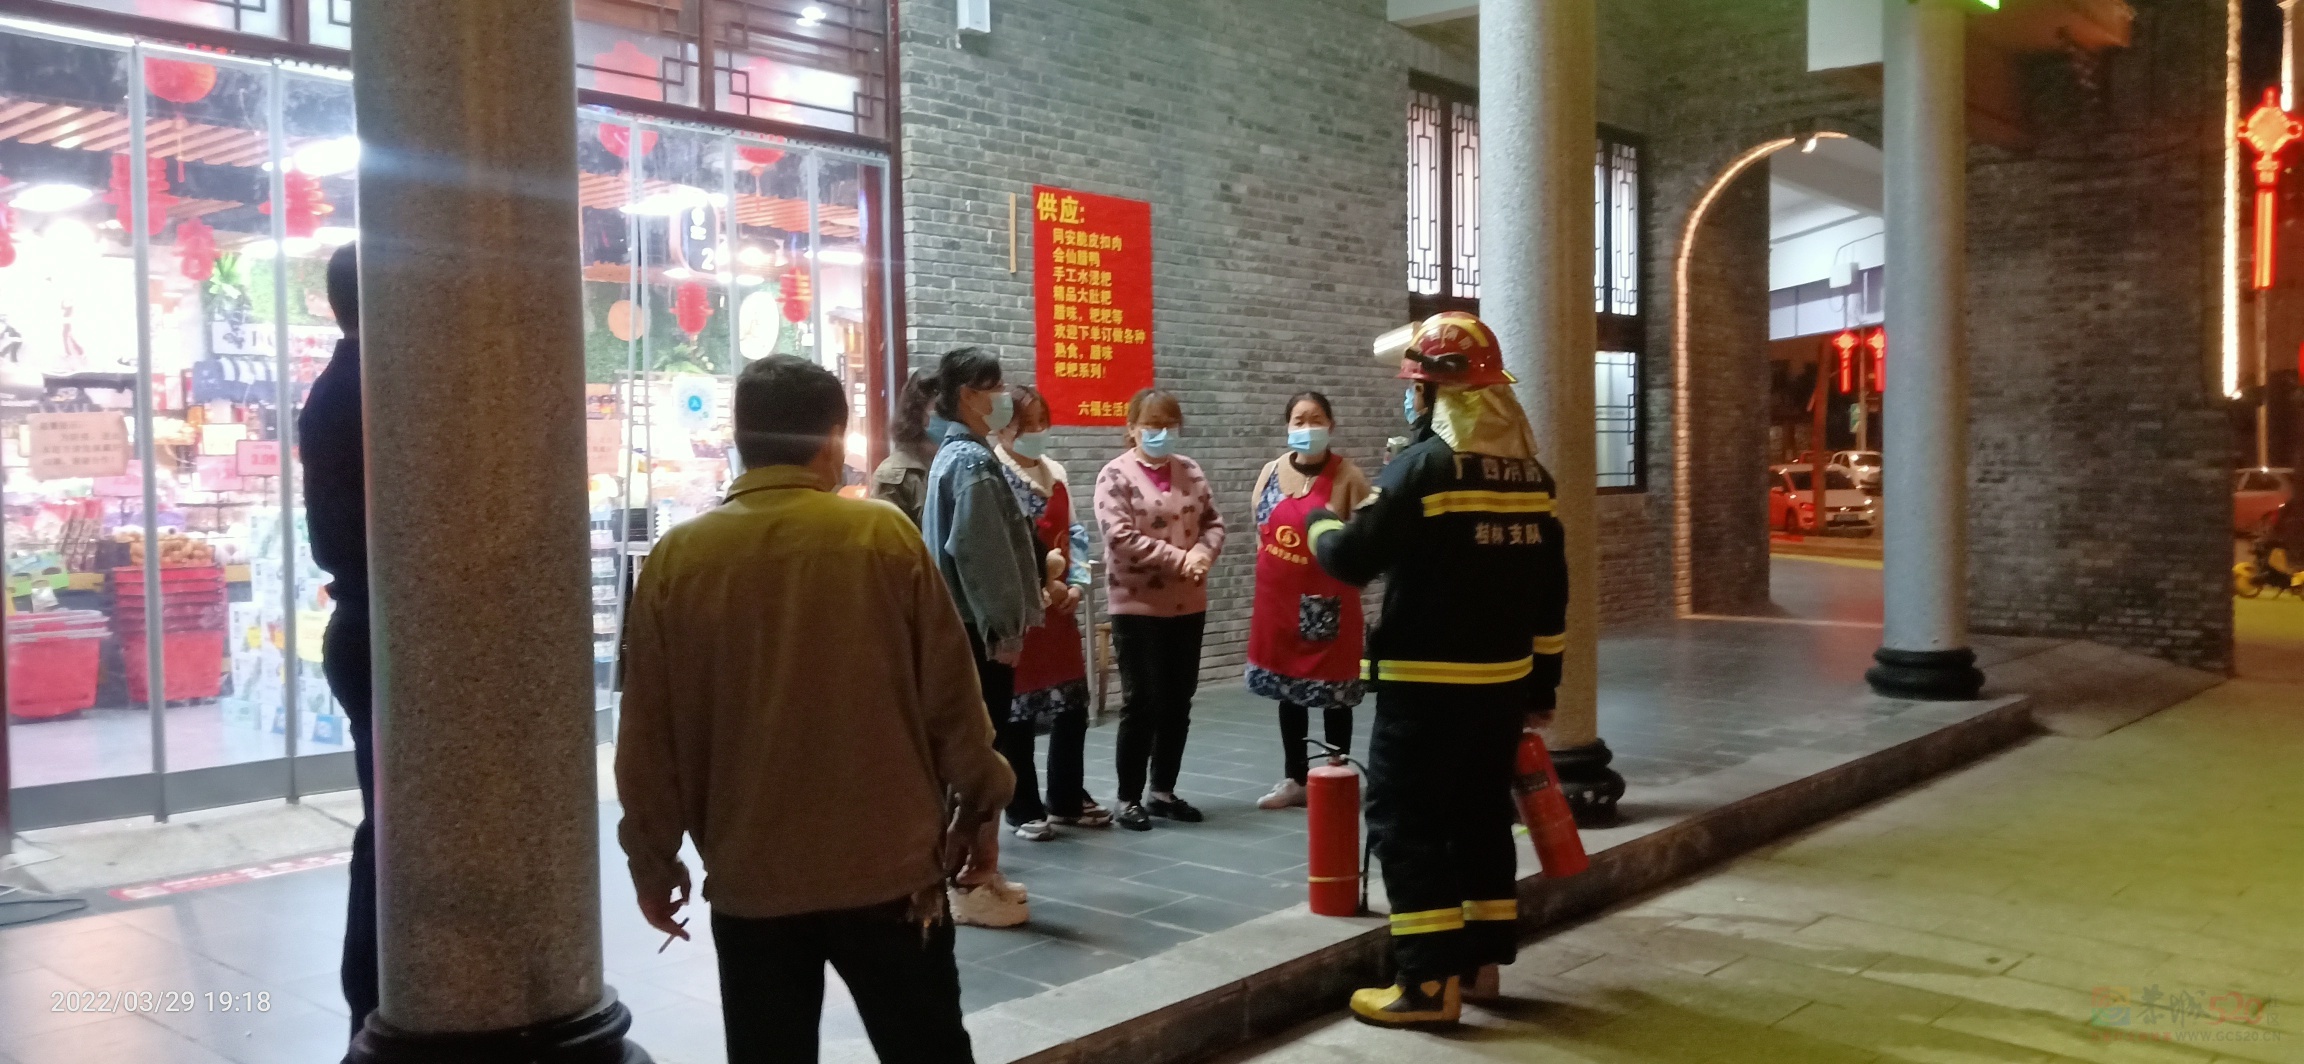 昨晚偶遇消防人员在油茶小镇的六福超市演练消防